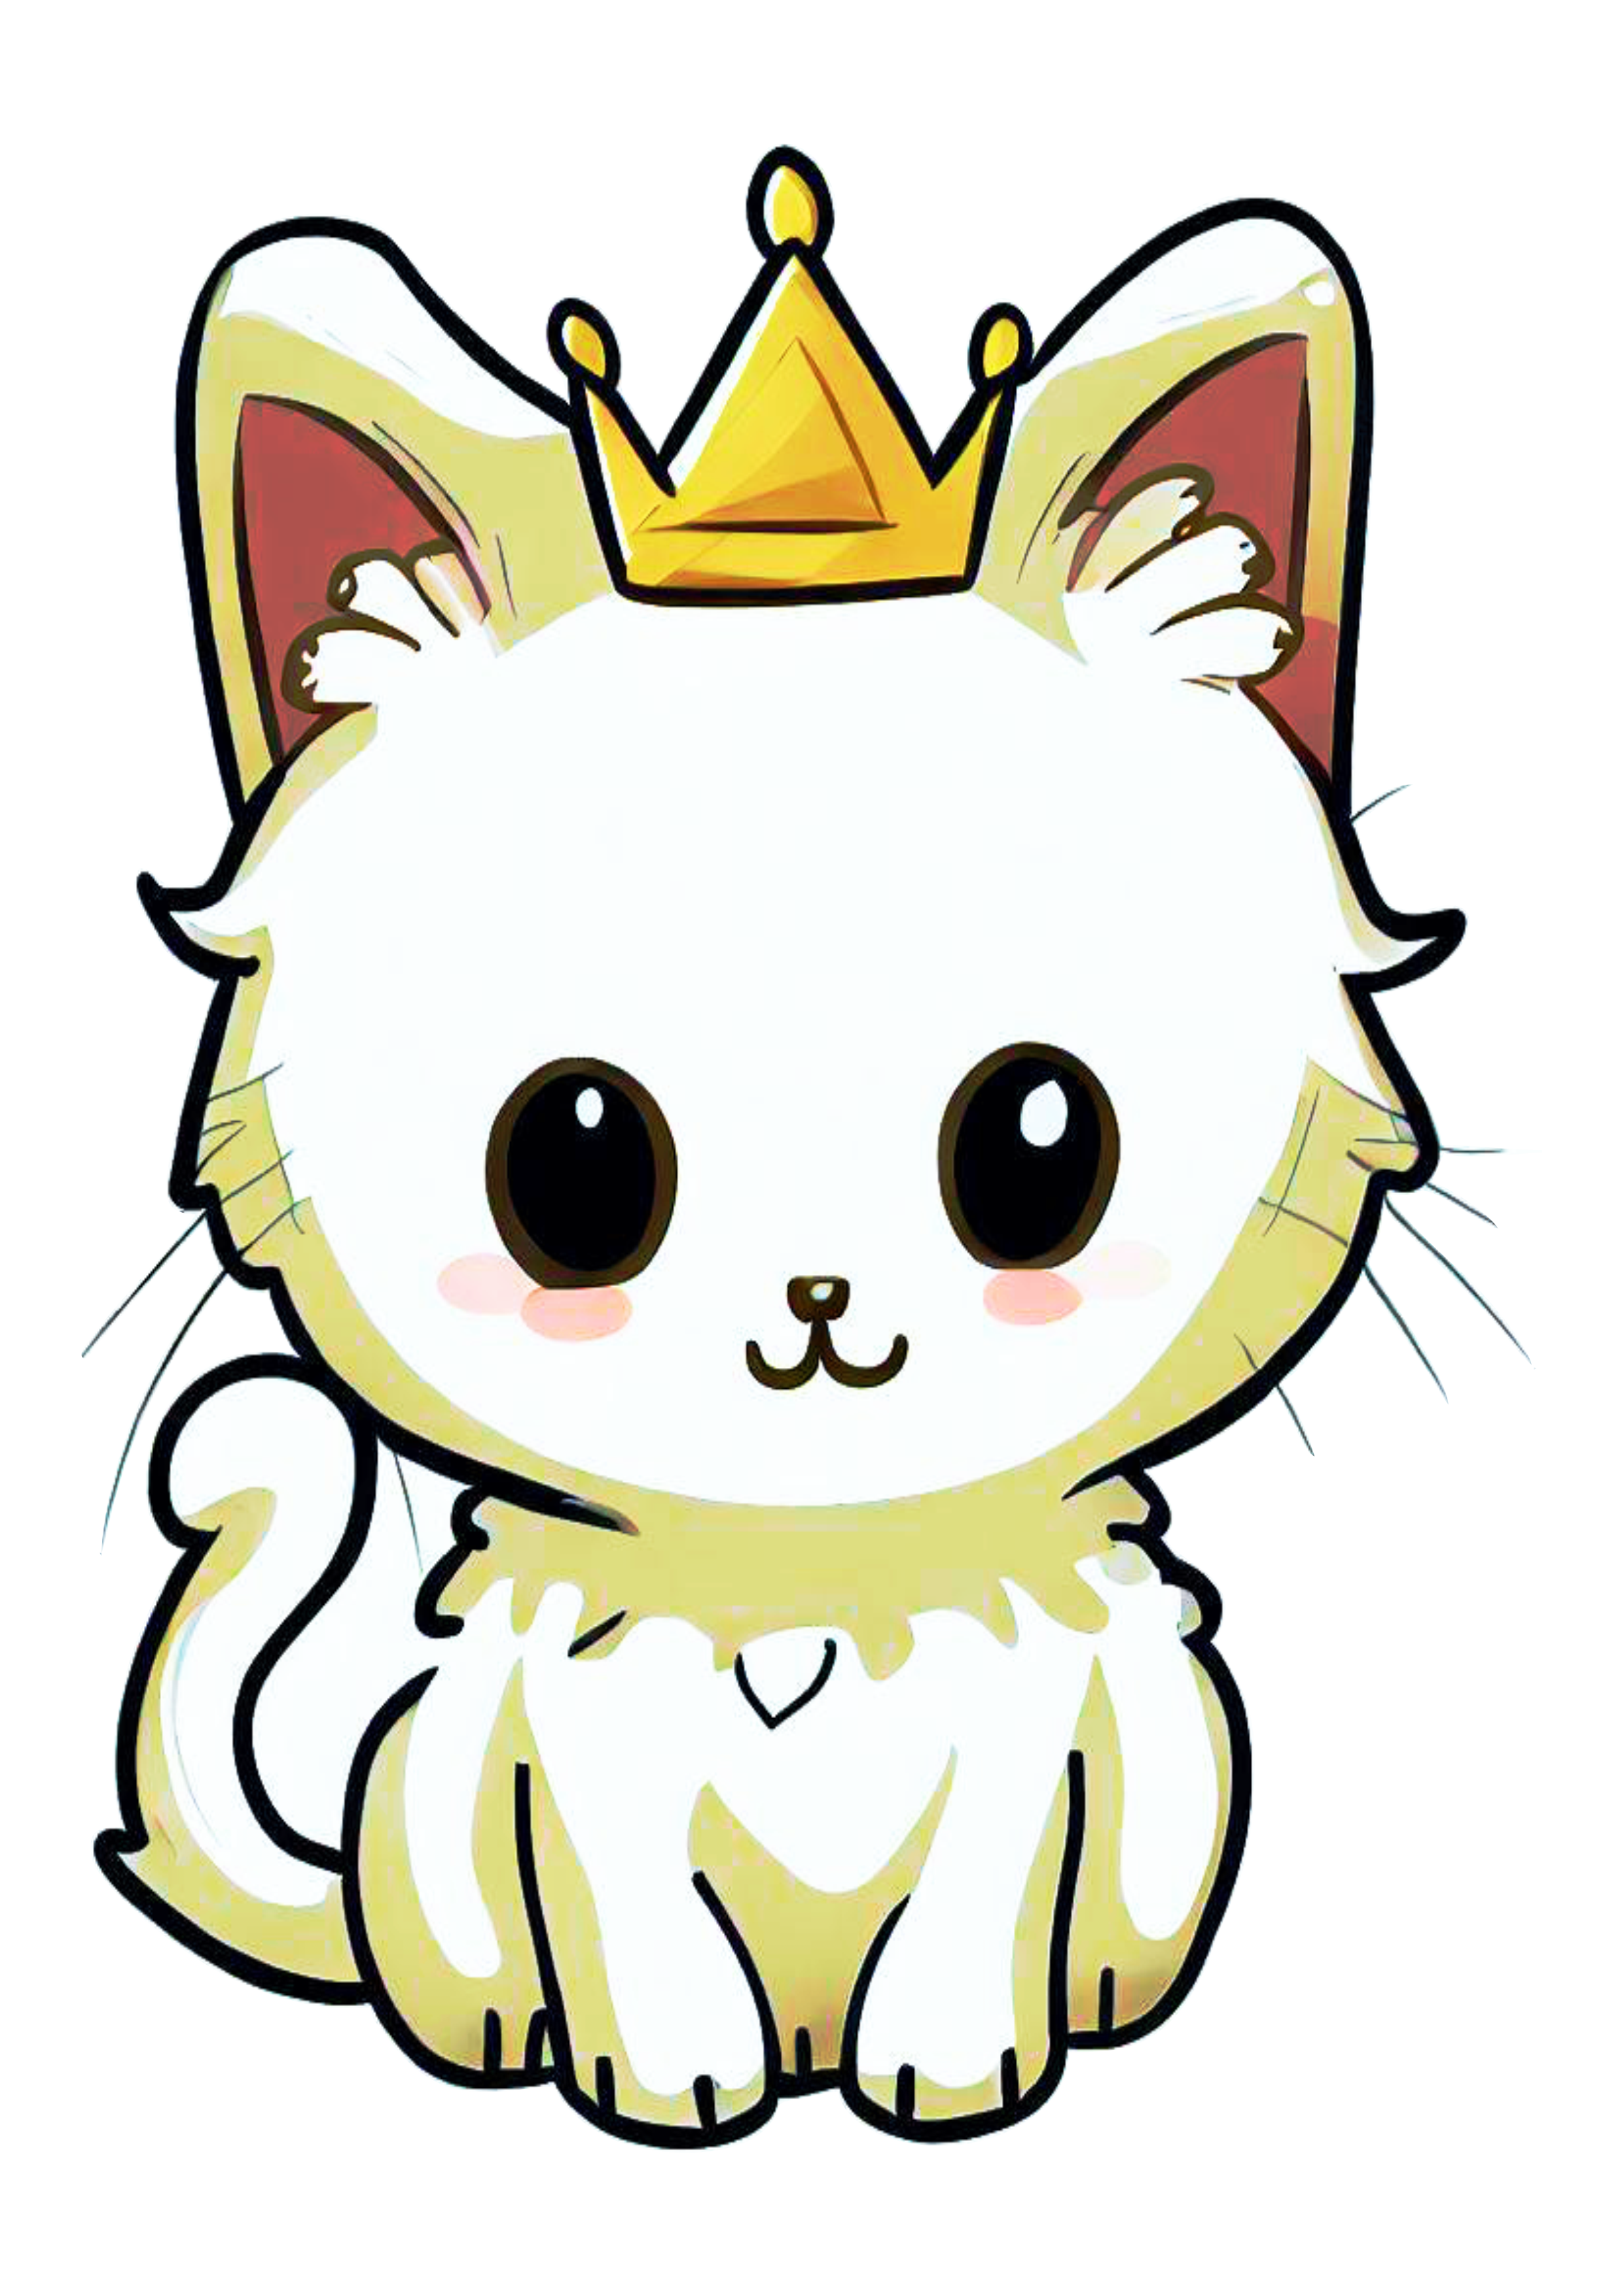 Gatinho sapeca fofinho com coroa cute desenho animal de estimação bonitinho imagem fundo transparente png